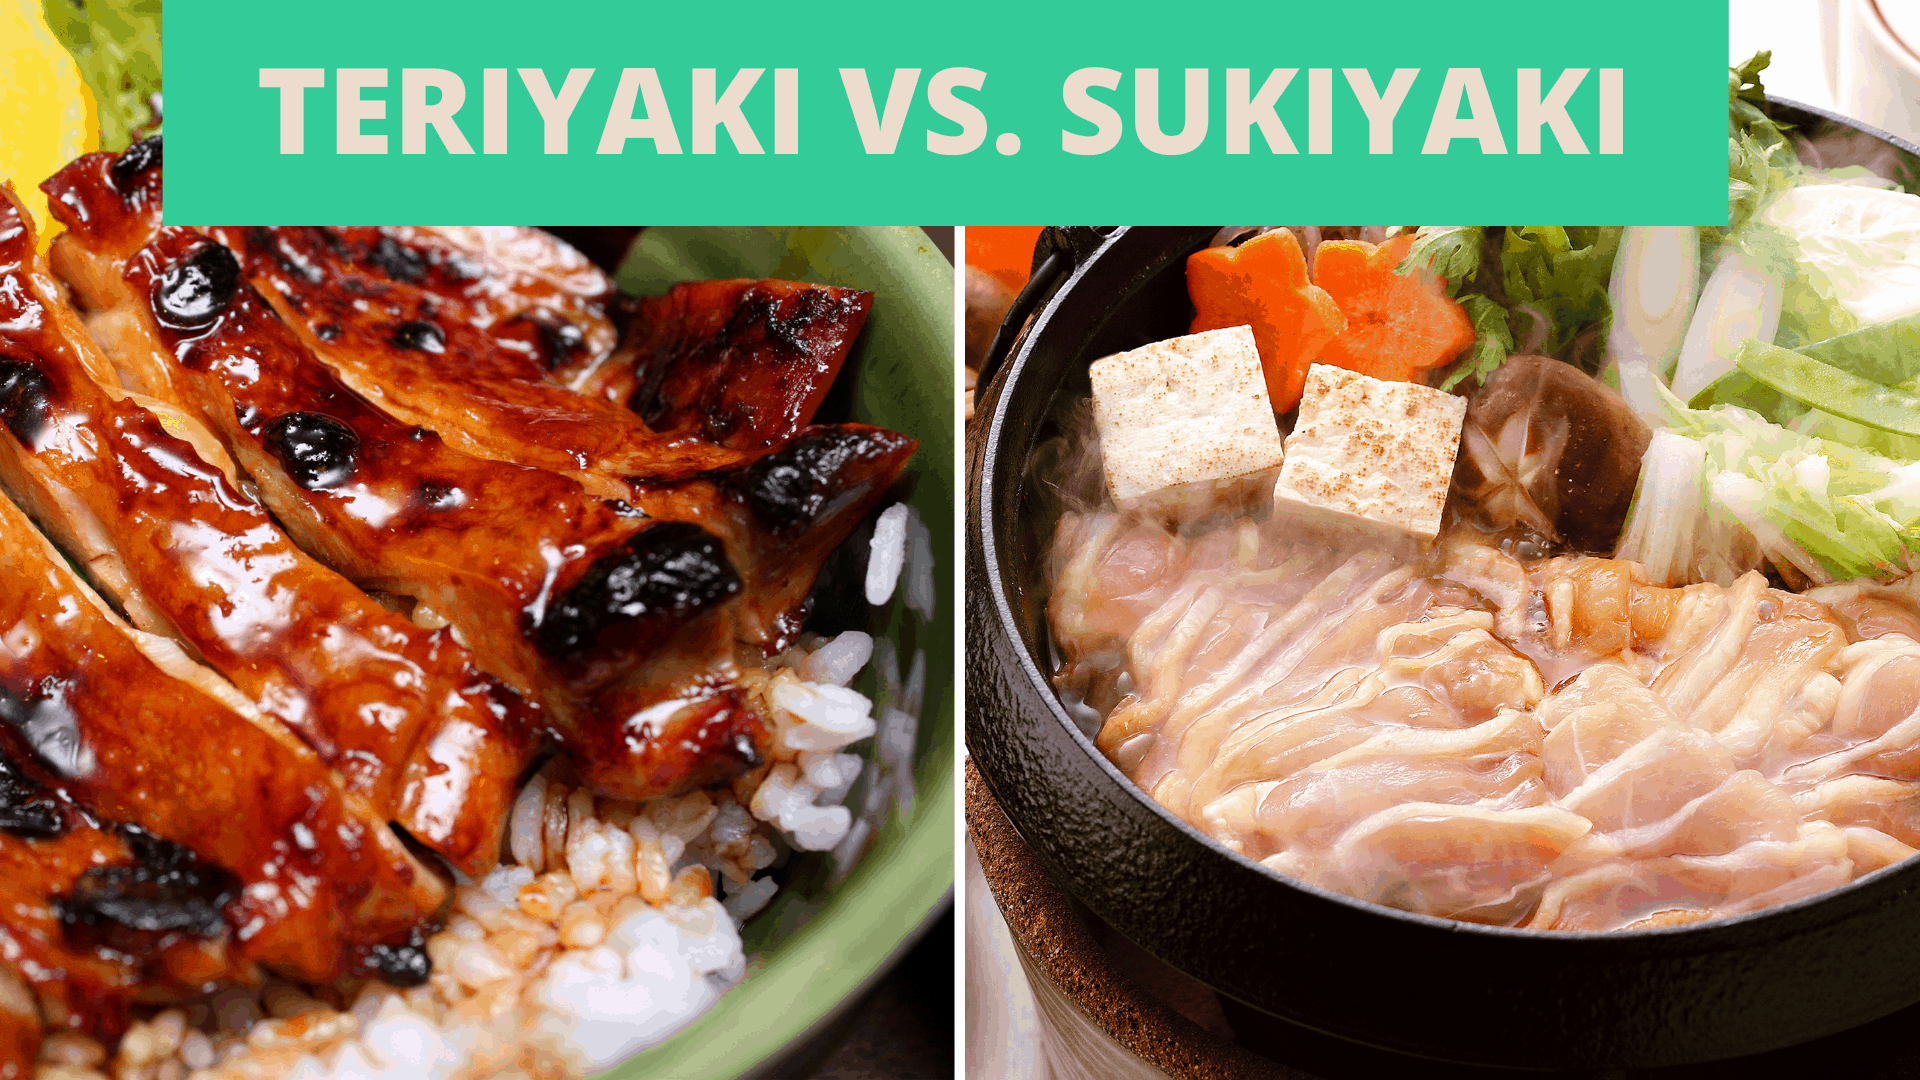 การเปรียบเทียบระหว่างเทอริยากิกับสุกี้ยากี้ระหว่างอาหารญี่ปุ่นคลาสสิกสองจานนี้